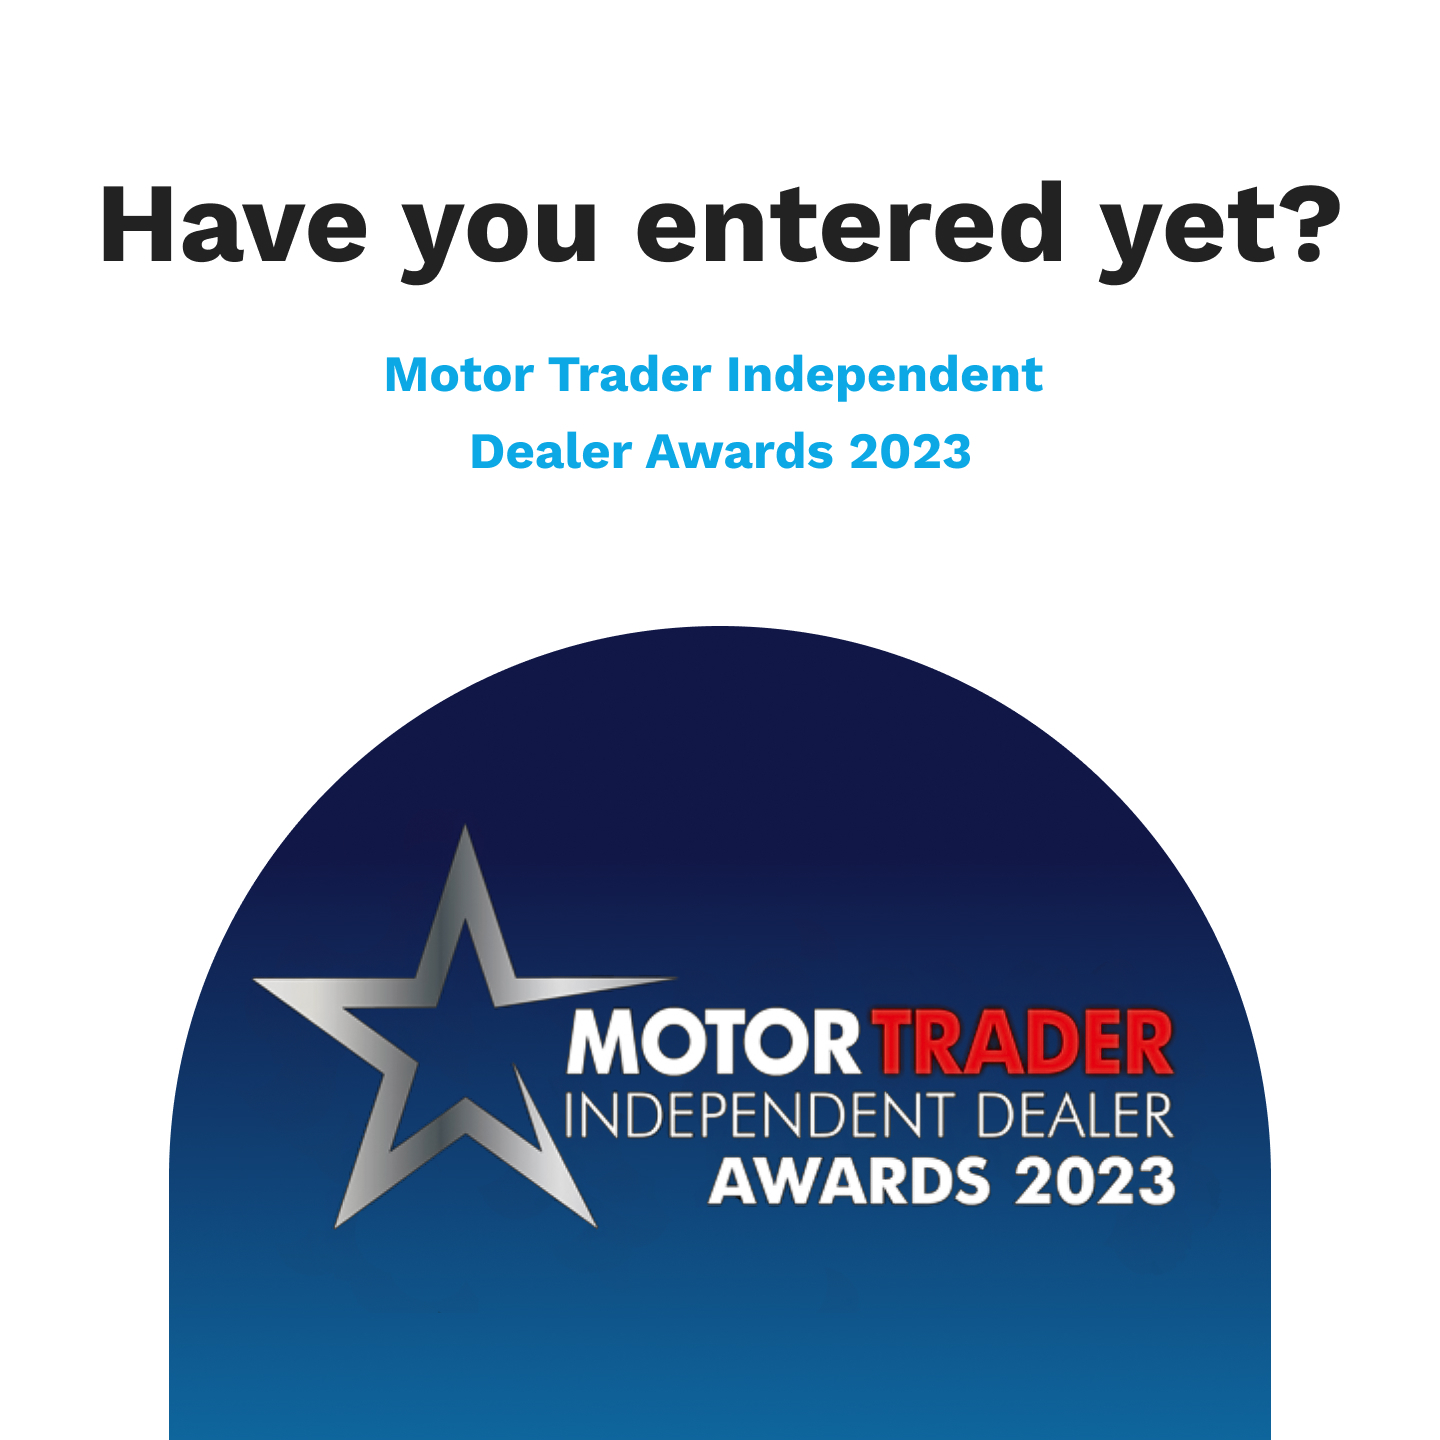 Motor Trader Independent Dealer Awards 2023